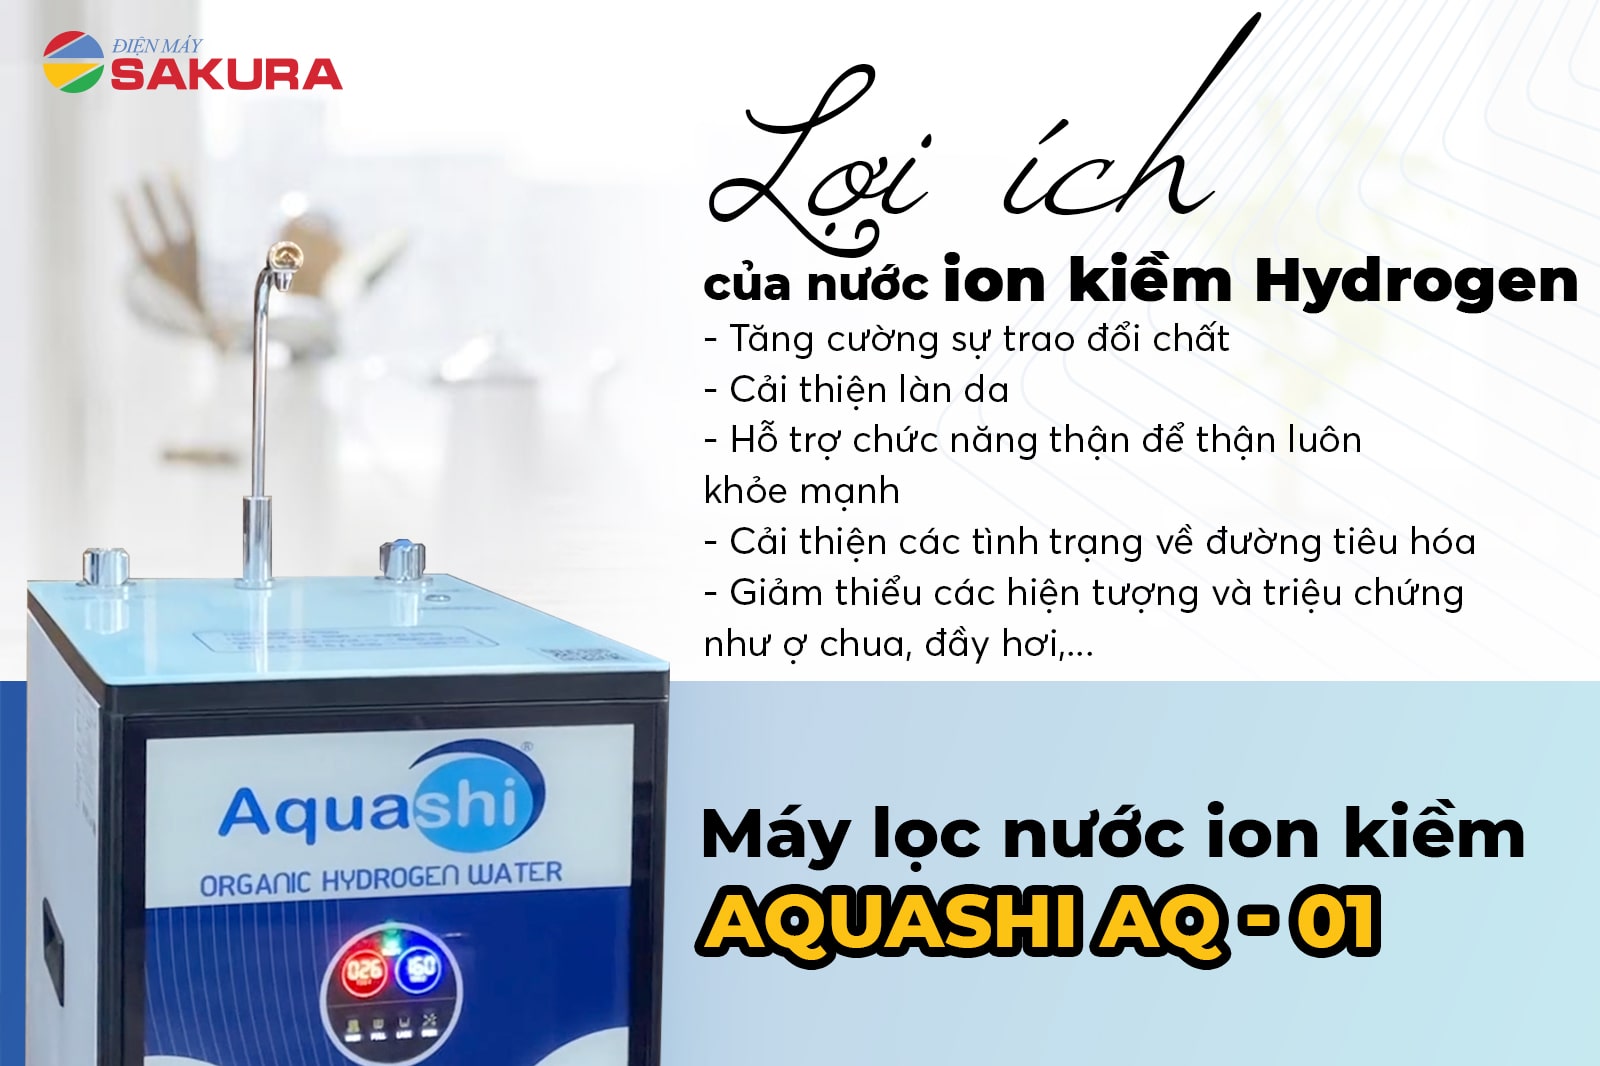 Máy lọc nước AQUASHI - AQ - 01 khám phá những lợi ích tuyệt vời của nước ion kiềm Hydrogen